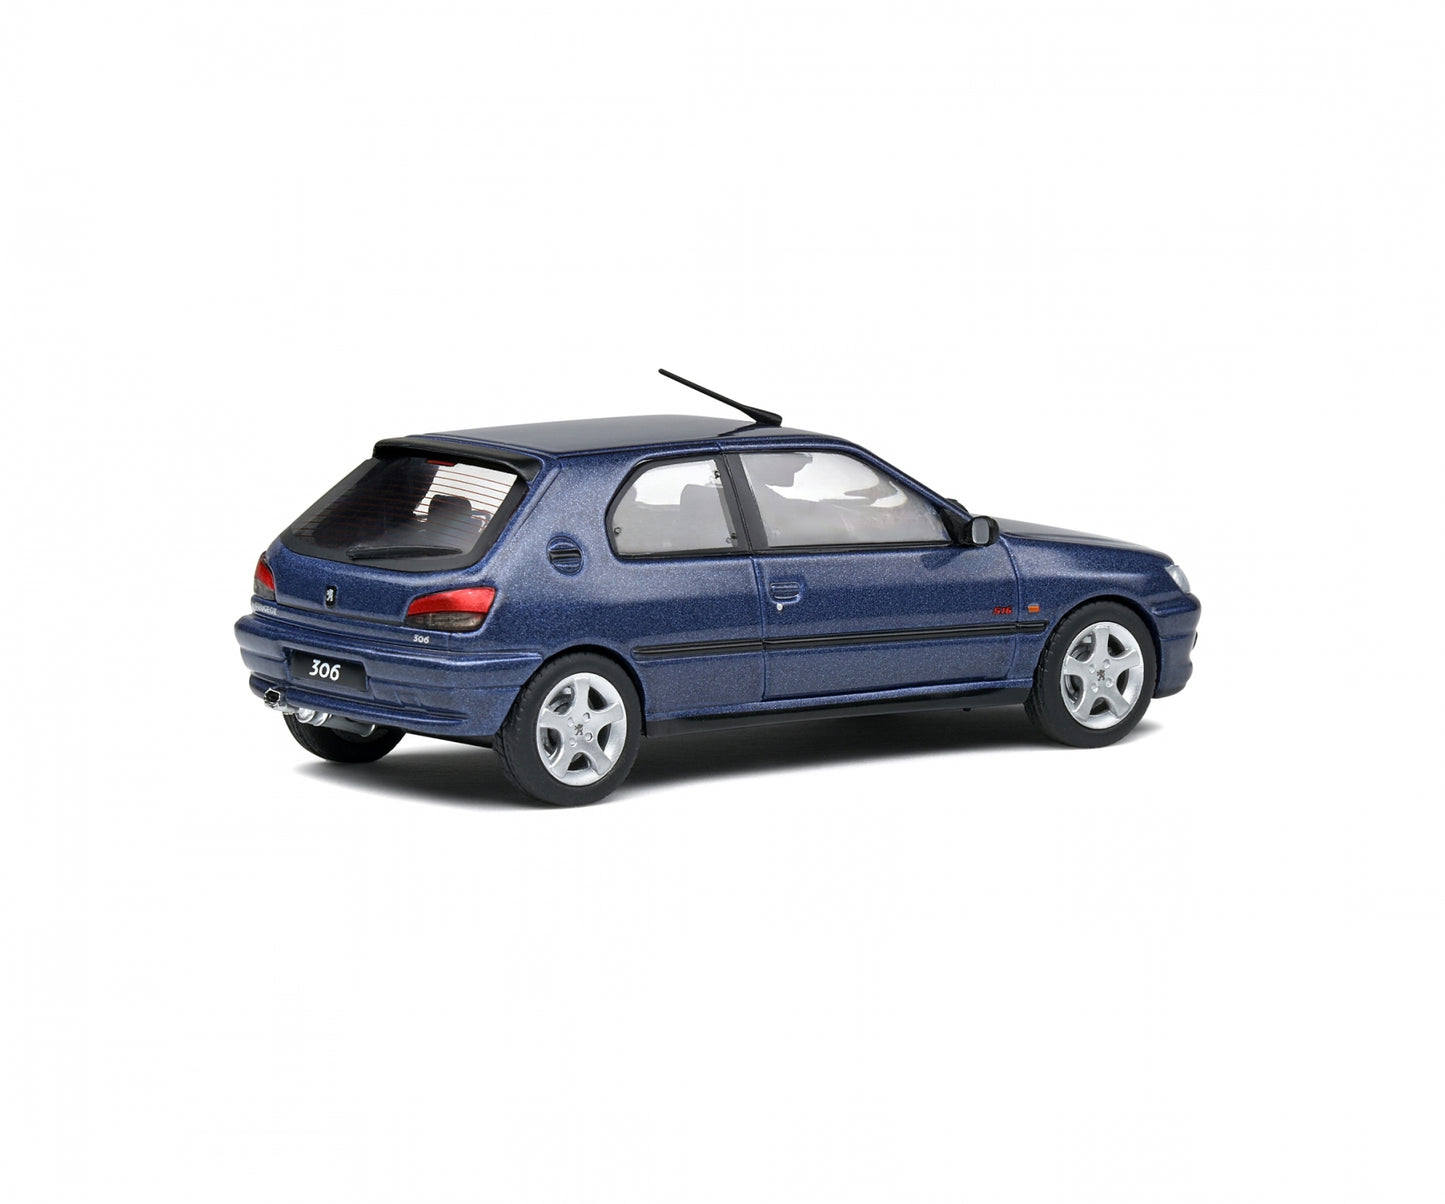 1:43 Peugeot 306 S16, 1998, blåmetallic, lukket model